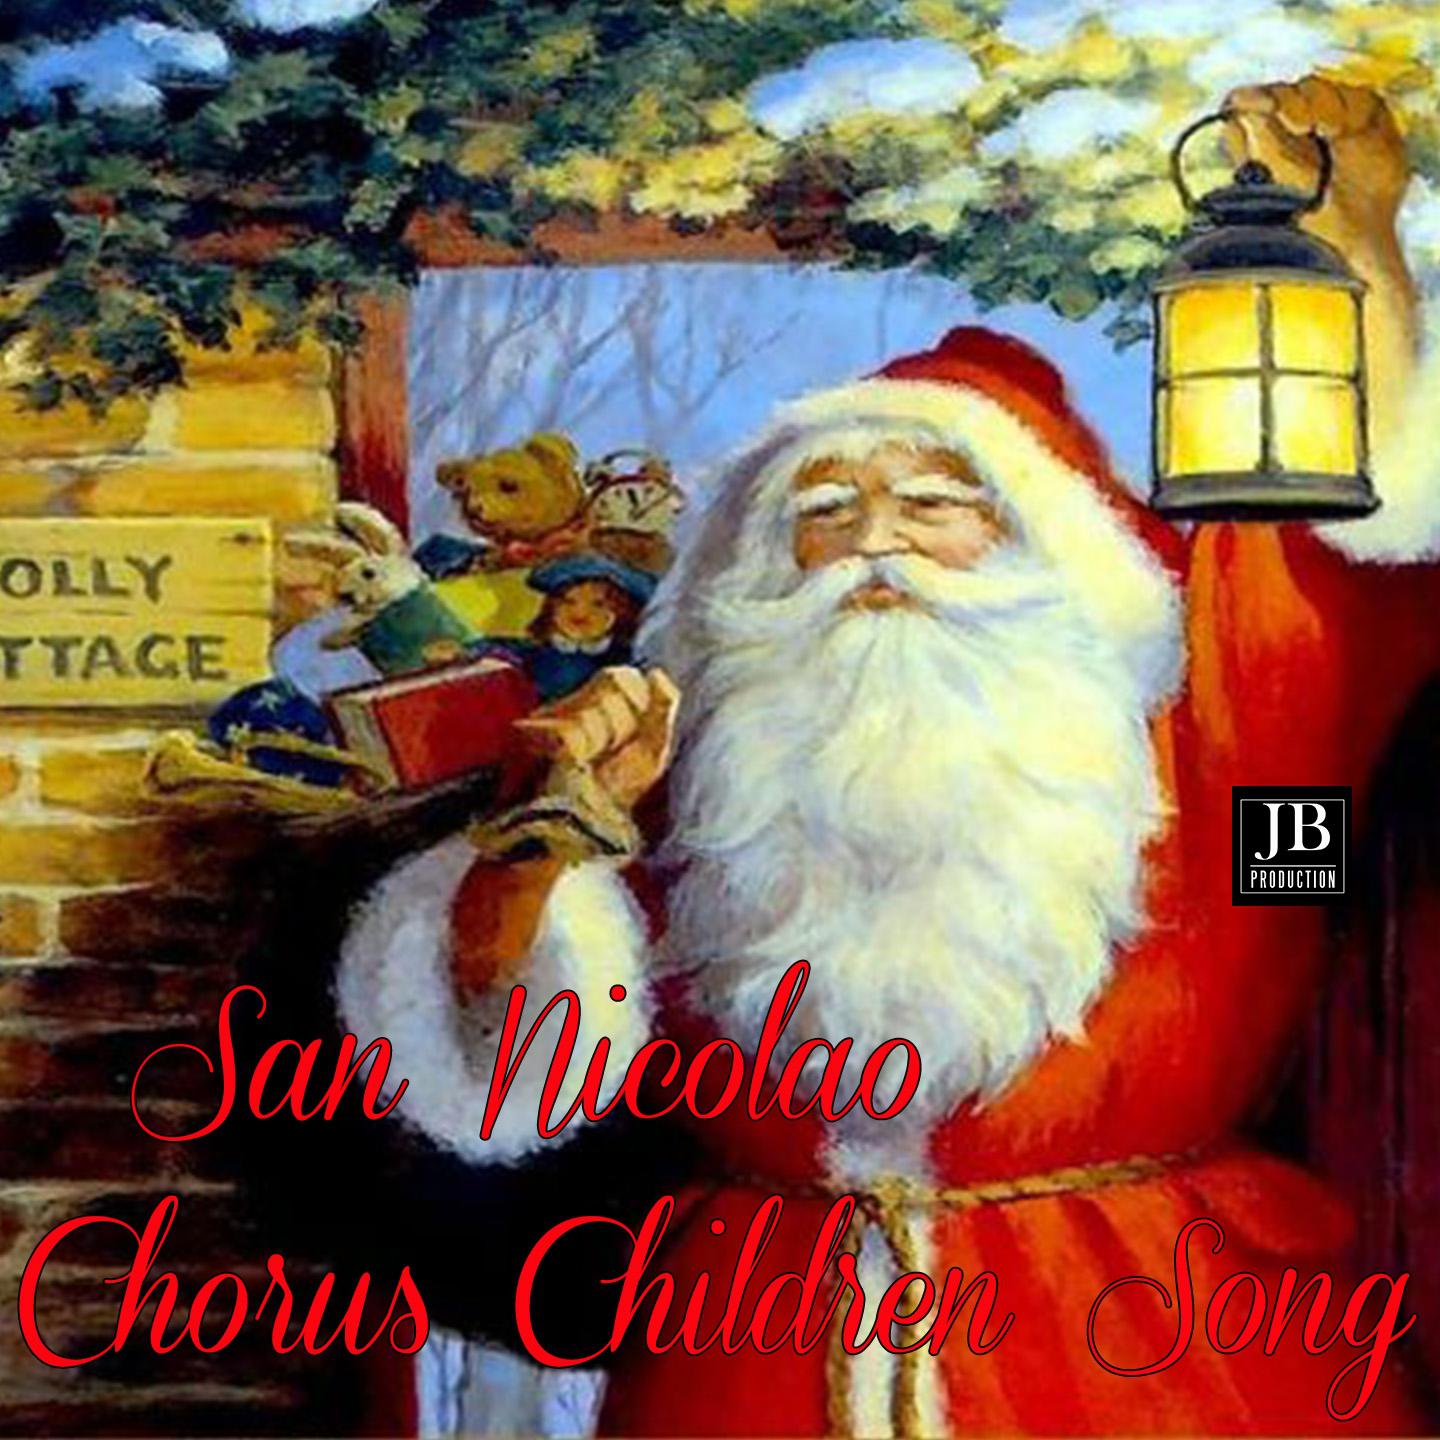 Last Christmas Medley: Last Christmas / Jingle Bells / Adeste Fideles / Bianco Natale / Happy Xmas / Tu Scendi Dalle Stelle / Astro Del Ciel / La Piva Dei Montanari / Ninna Nanna / We Are the World (Tribute To Wham)